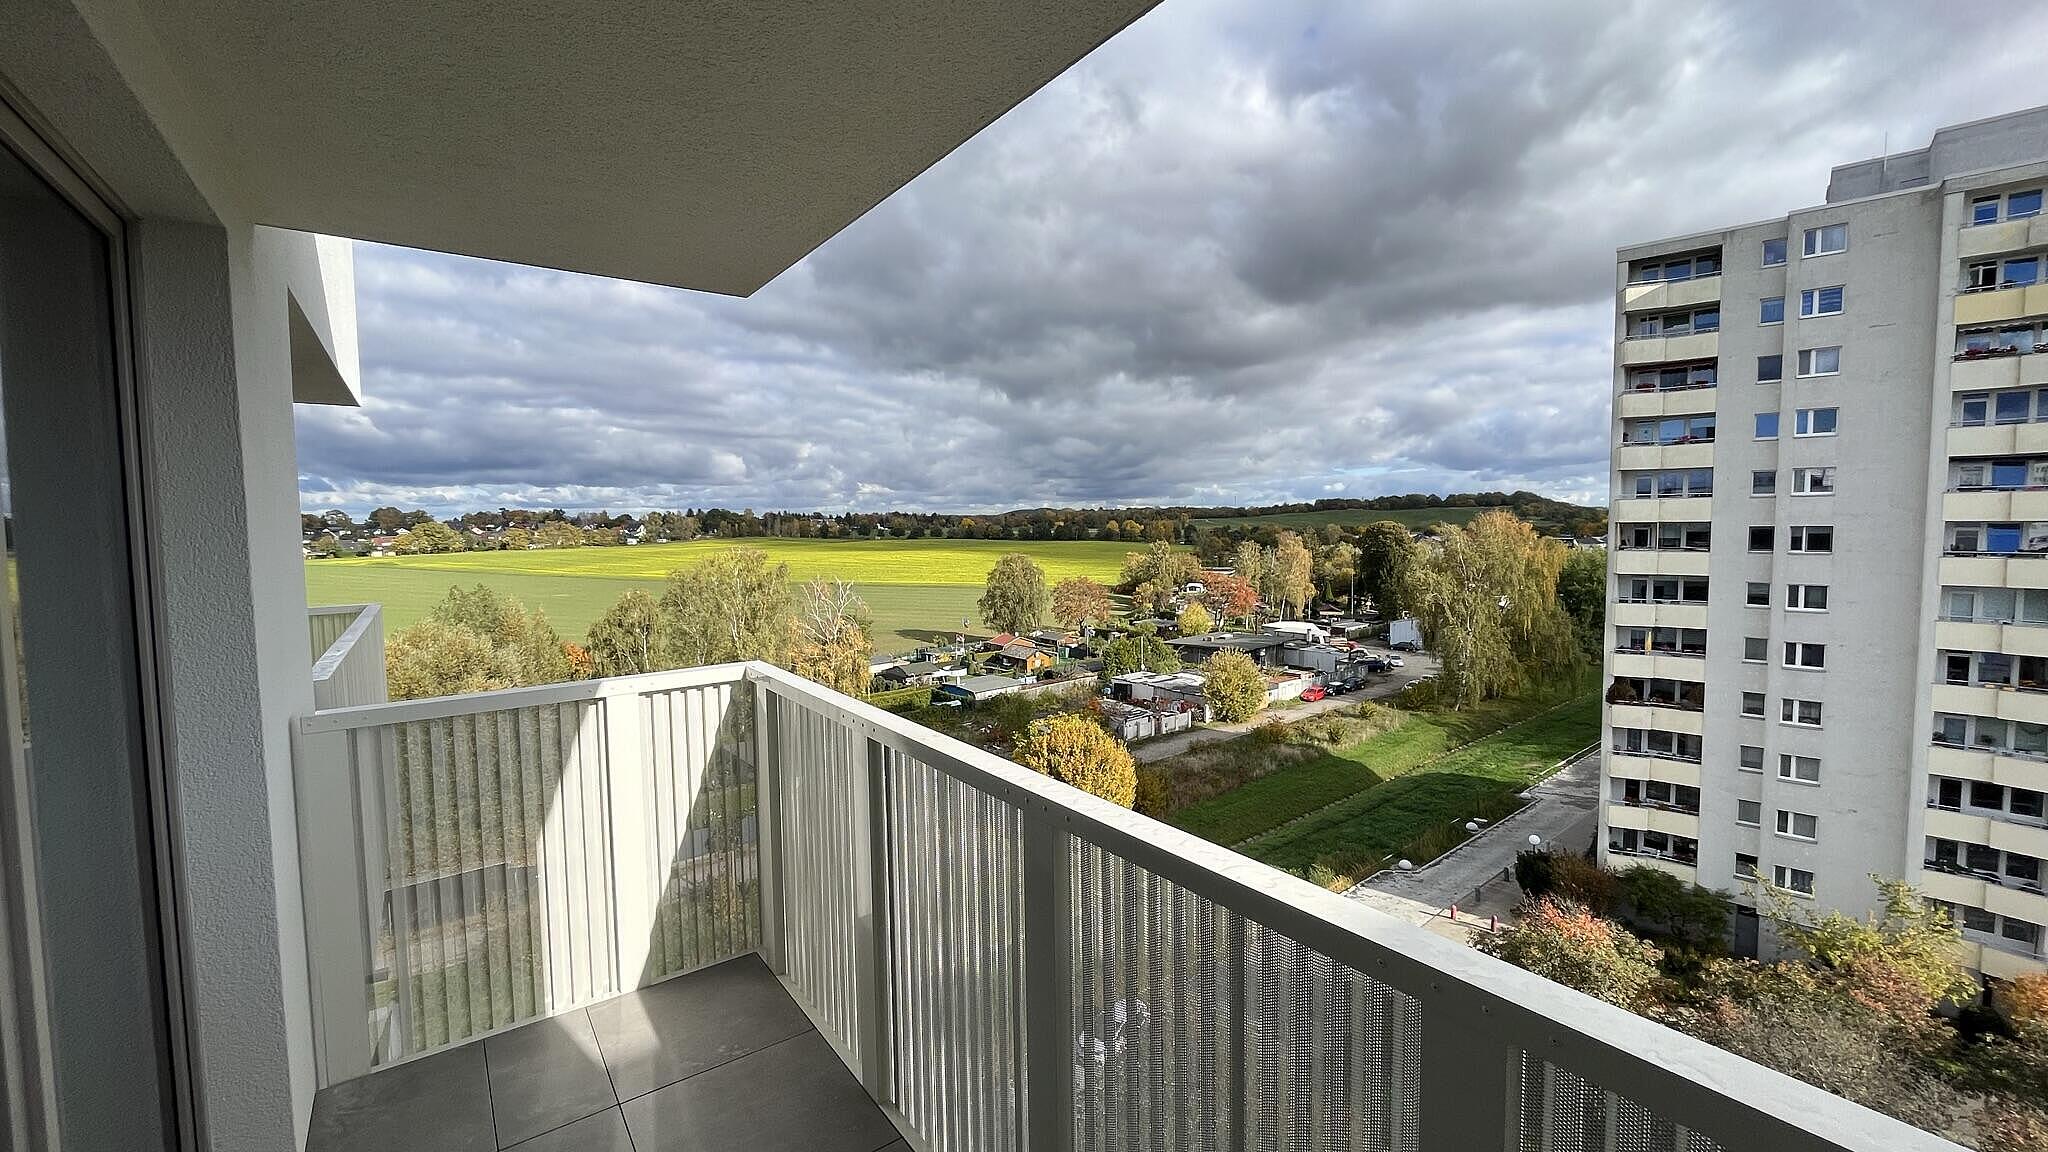 Außenaufnahme zeigt die Sicht aus einem der Balkone des Neubaus Finsterwalder Straße - ein grünes Feld im Sonnenschein, das hinter der Stadtgrenze in Brandenburg liegt. 